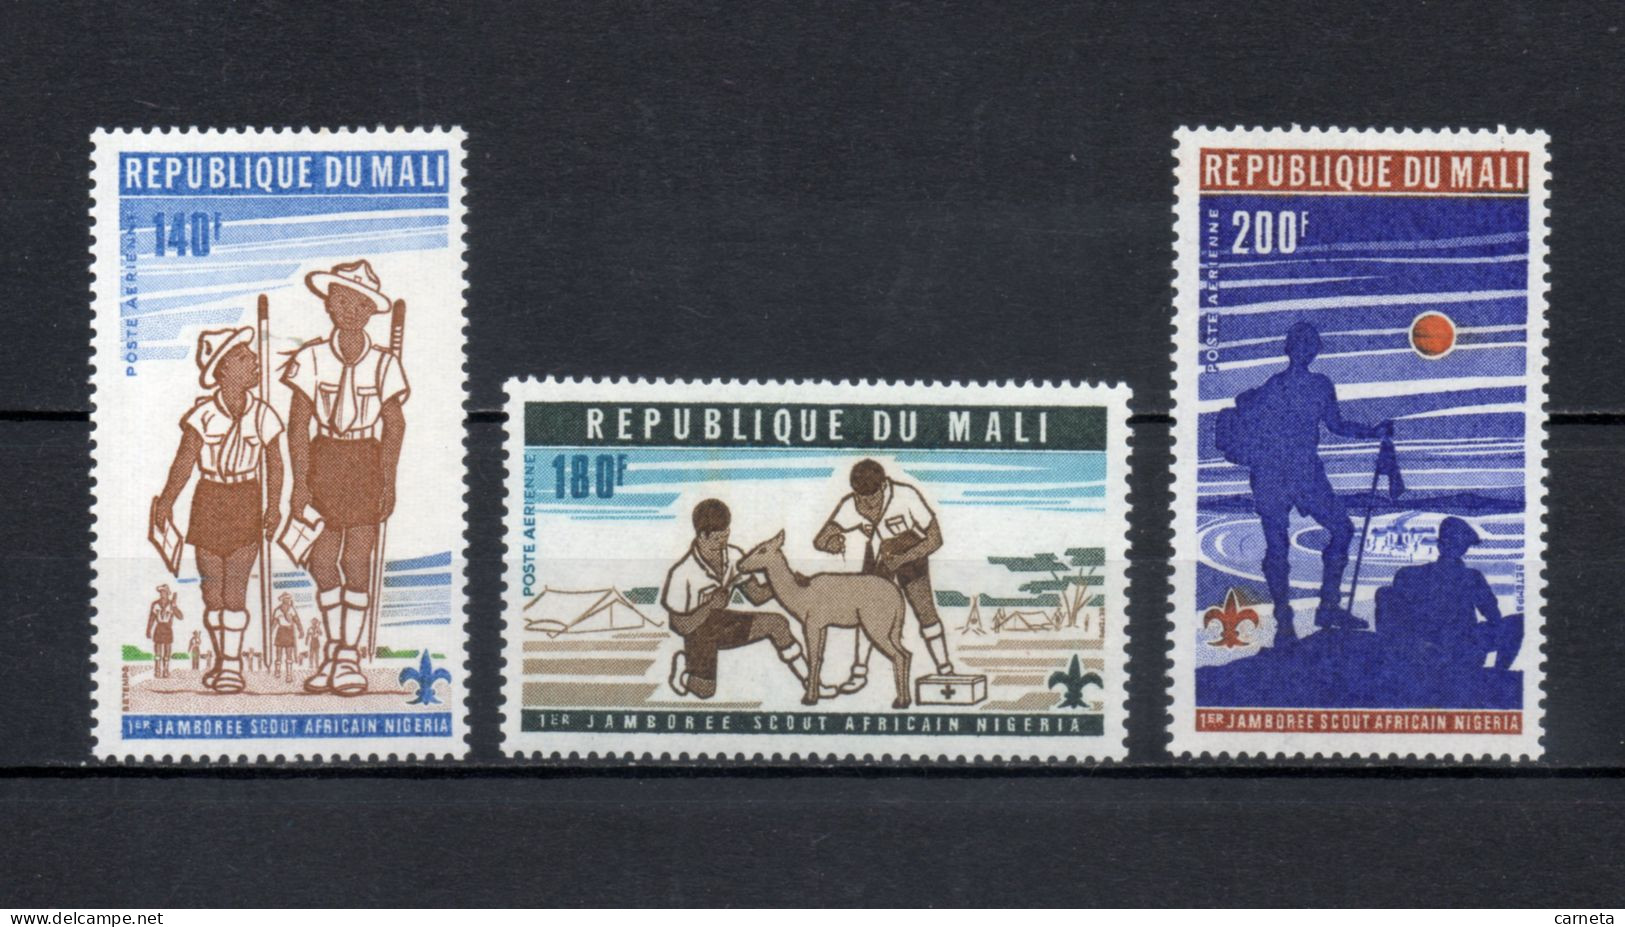 MALI  PA  N° 280 à 282   NEUFS SANS CHARNIERE  COTE 5.00€    SCOUTISME - Mali (1959-...)